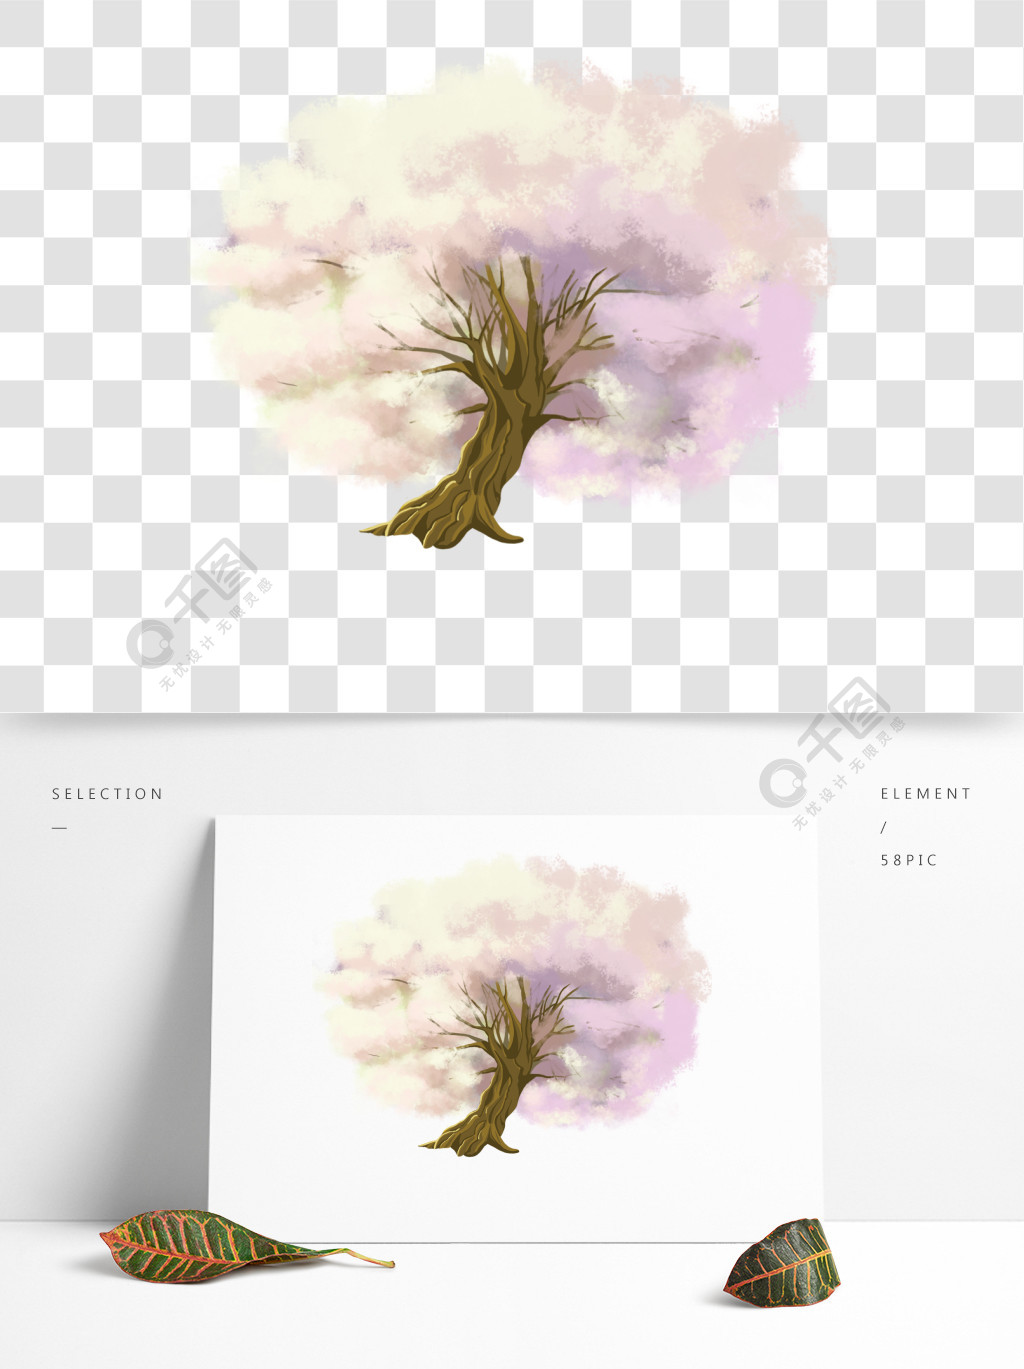 手绘古风樱花树梦幻素材3年前发布